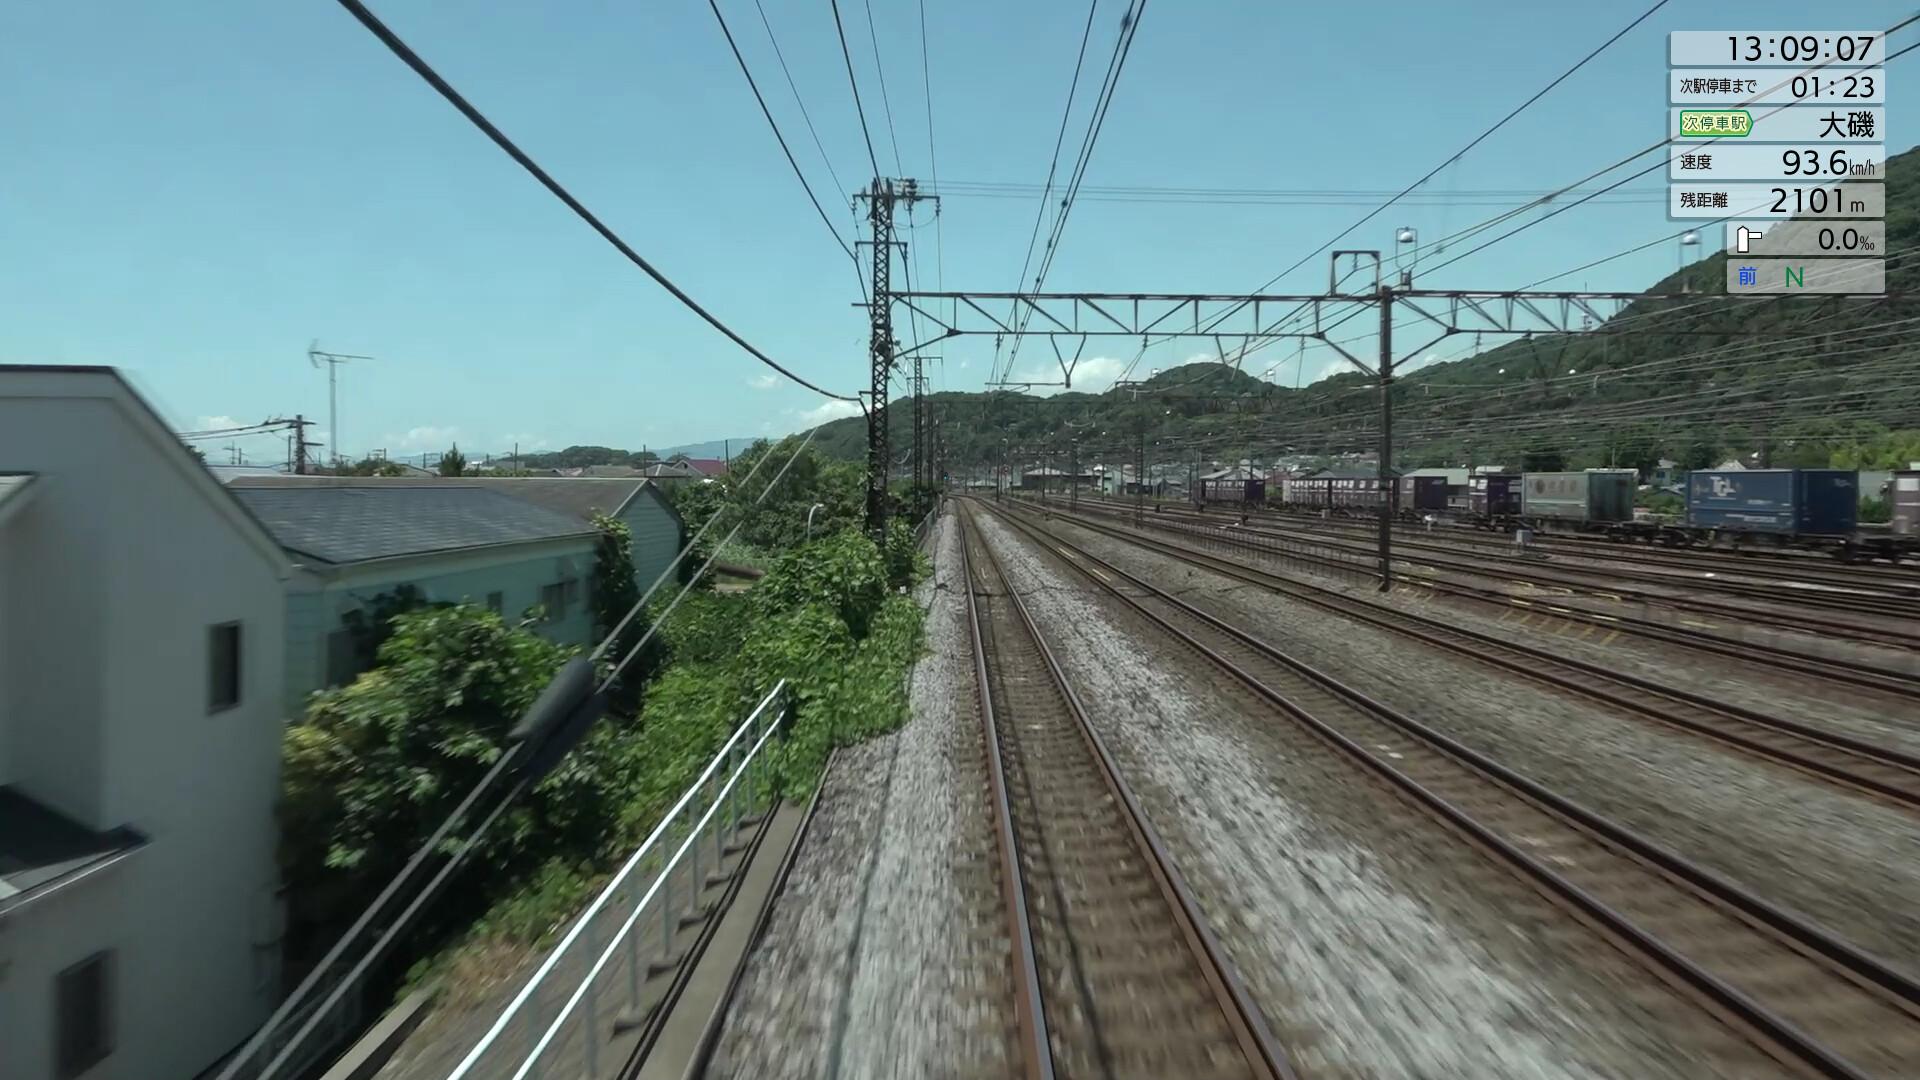 JR EAST Train Simulator: Tokaido Line (Tokyo to Atami) E233-3000 series